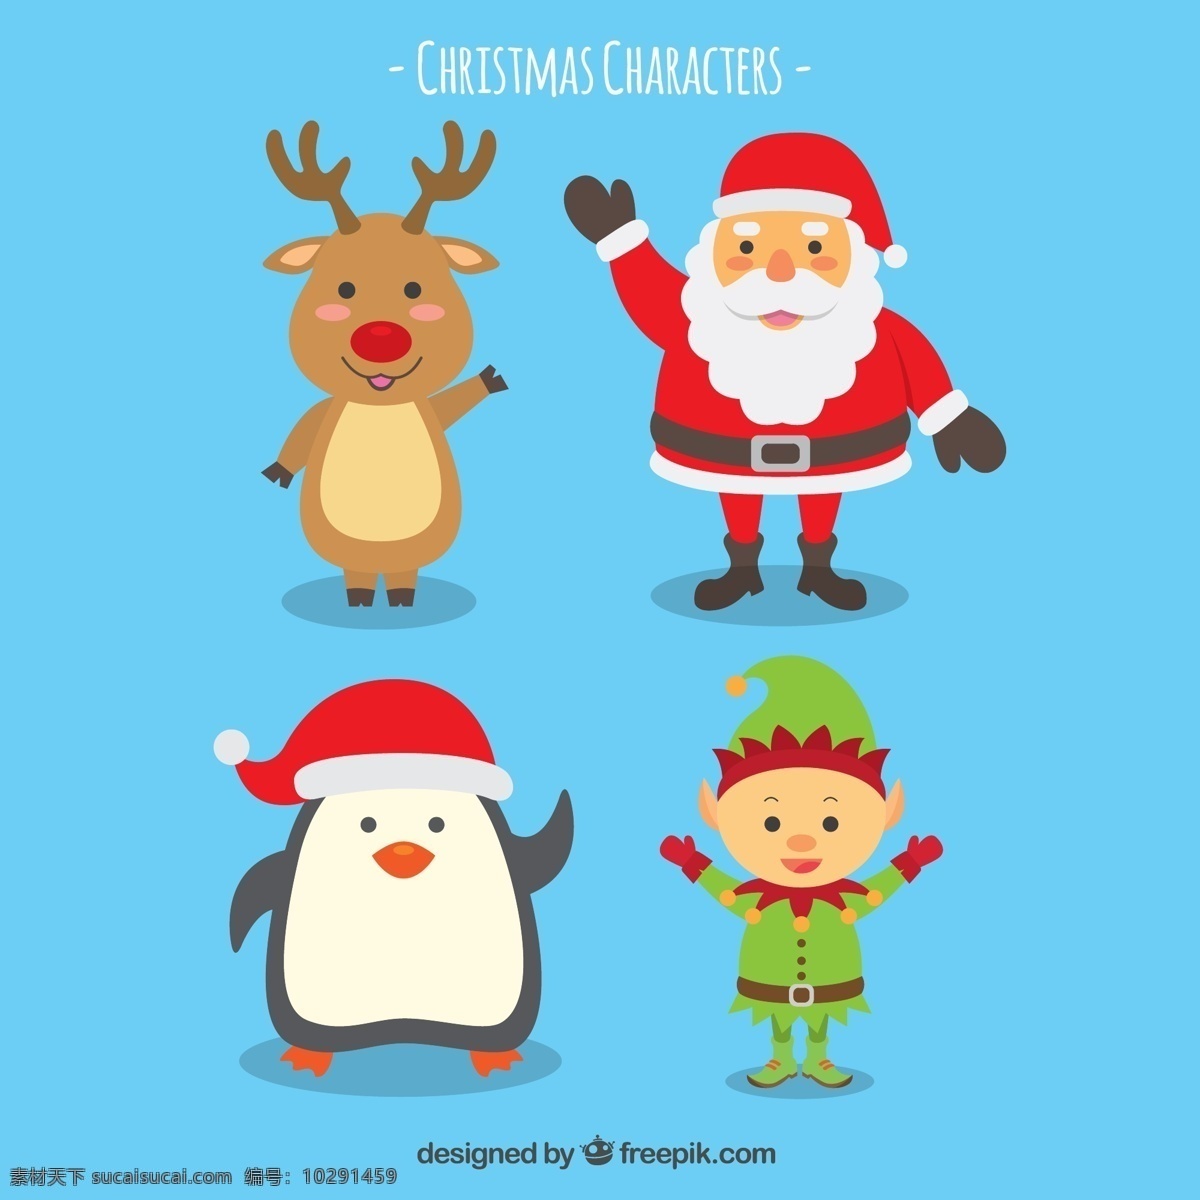 款 可爱 招手 圣诞 角色 打招呼 企鹅 圣诞节 圣诞老人 精灵 驯鹿 文化艺术 节日庆祝